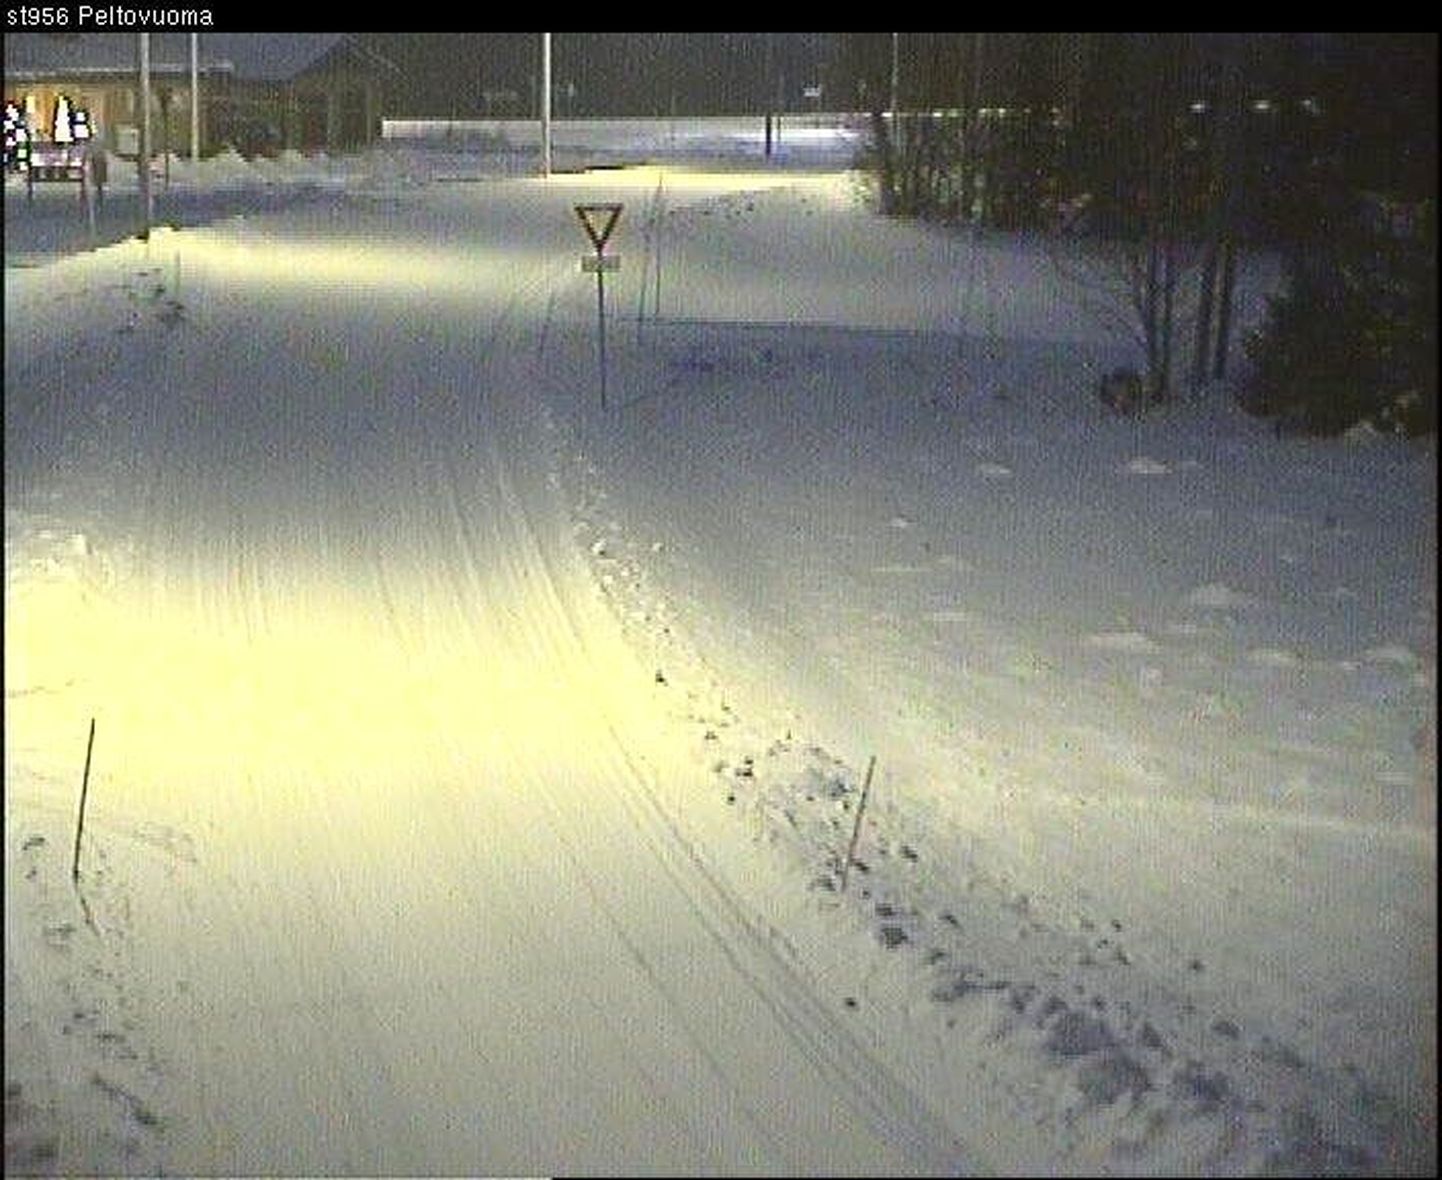 Talveilm Põhja-Soomes Enentekiö vallas täna kell 8.53 maanteekaamerast saadud pildi järgi.